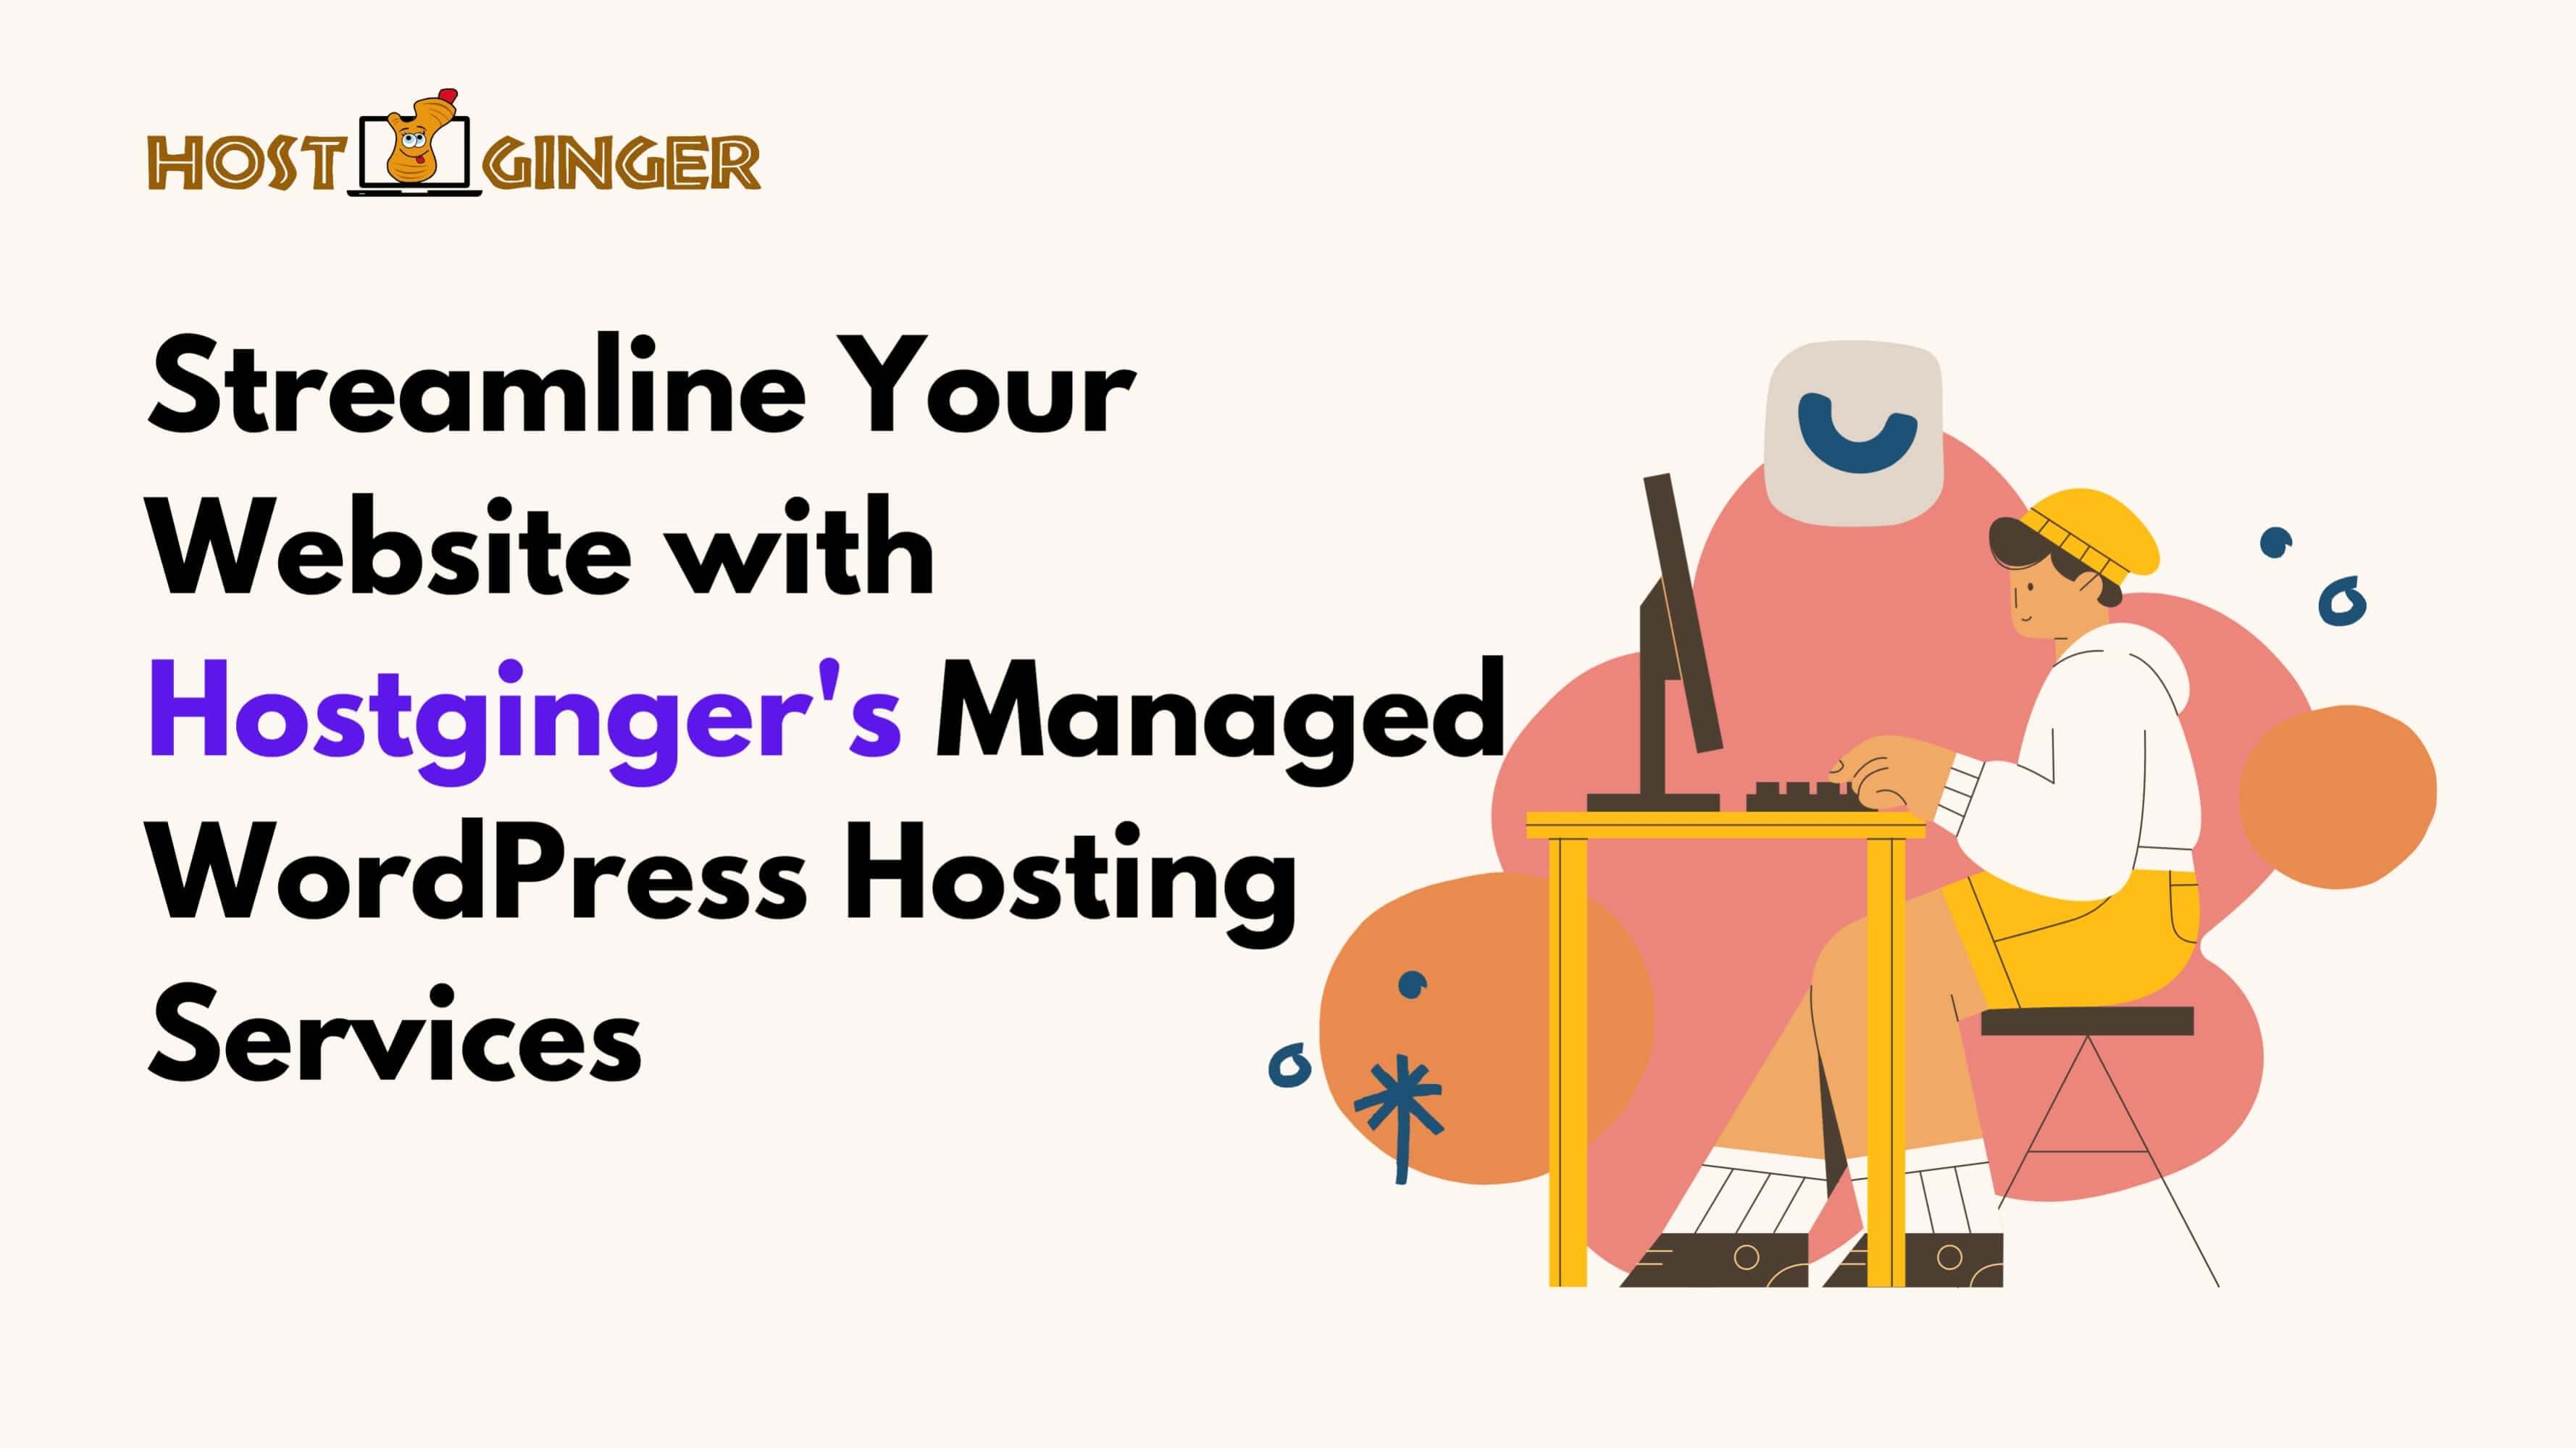 Streamline Your Website with Hostginger's Managed WordPress Hosting Services